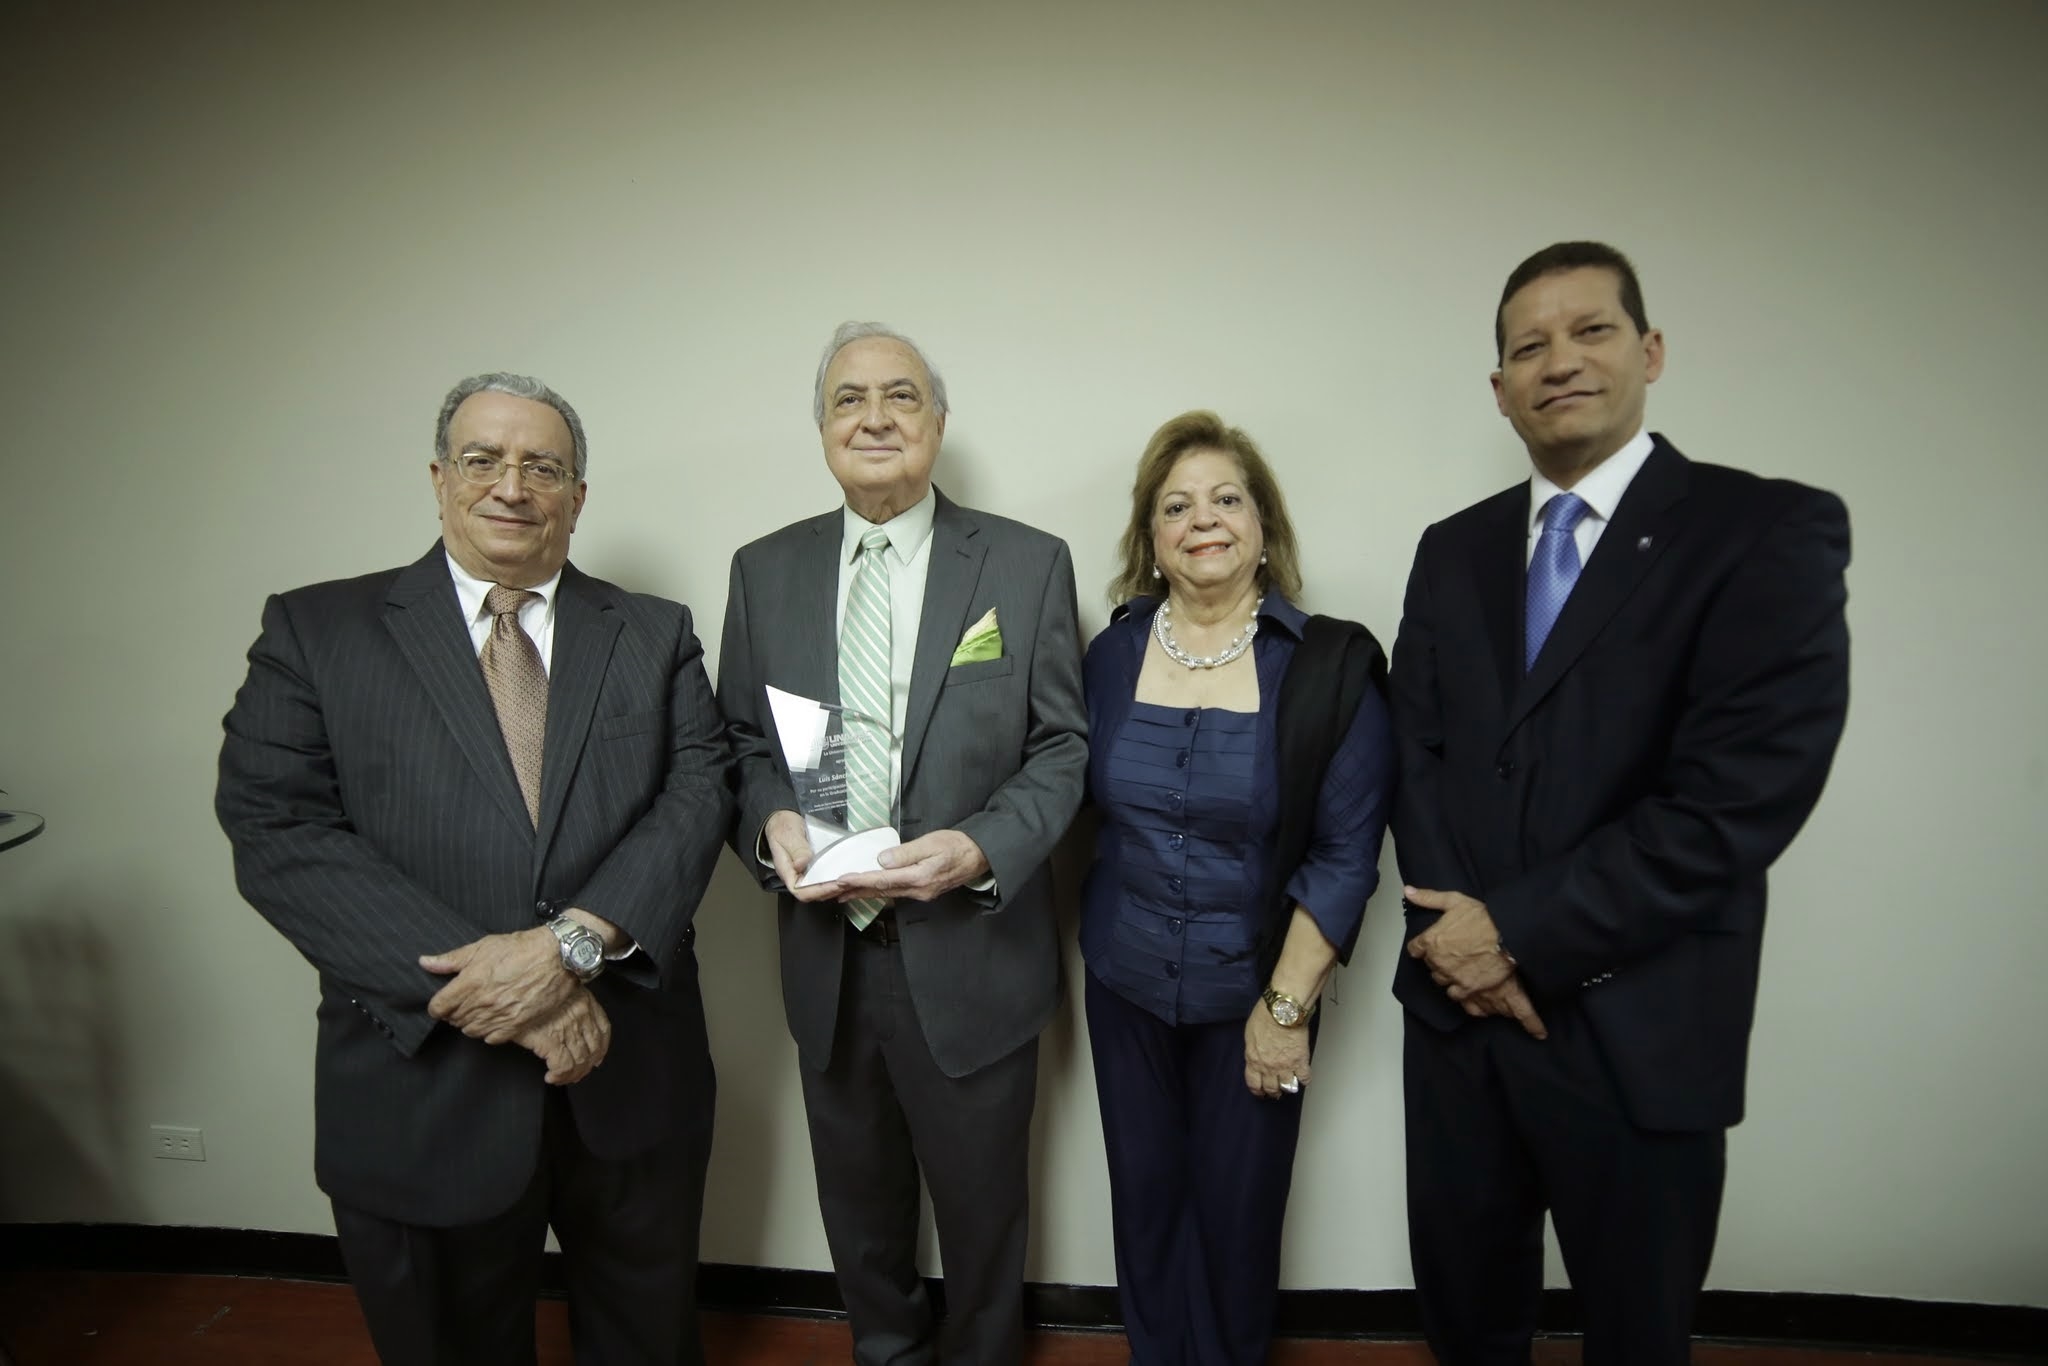 Dr. Radhamés Mejía, Dr. Luis de Sánchez Noble, Mildred Josefina de Sánchez, Lic. Roberto Rodríguez Estrella